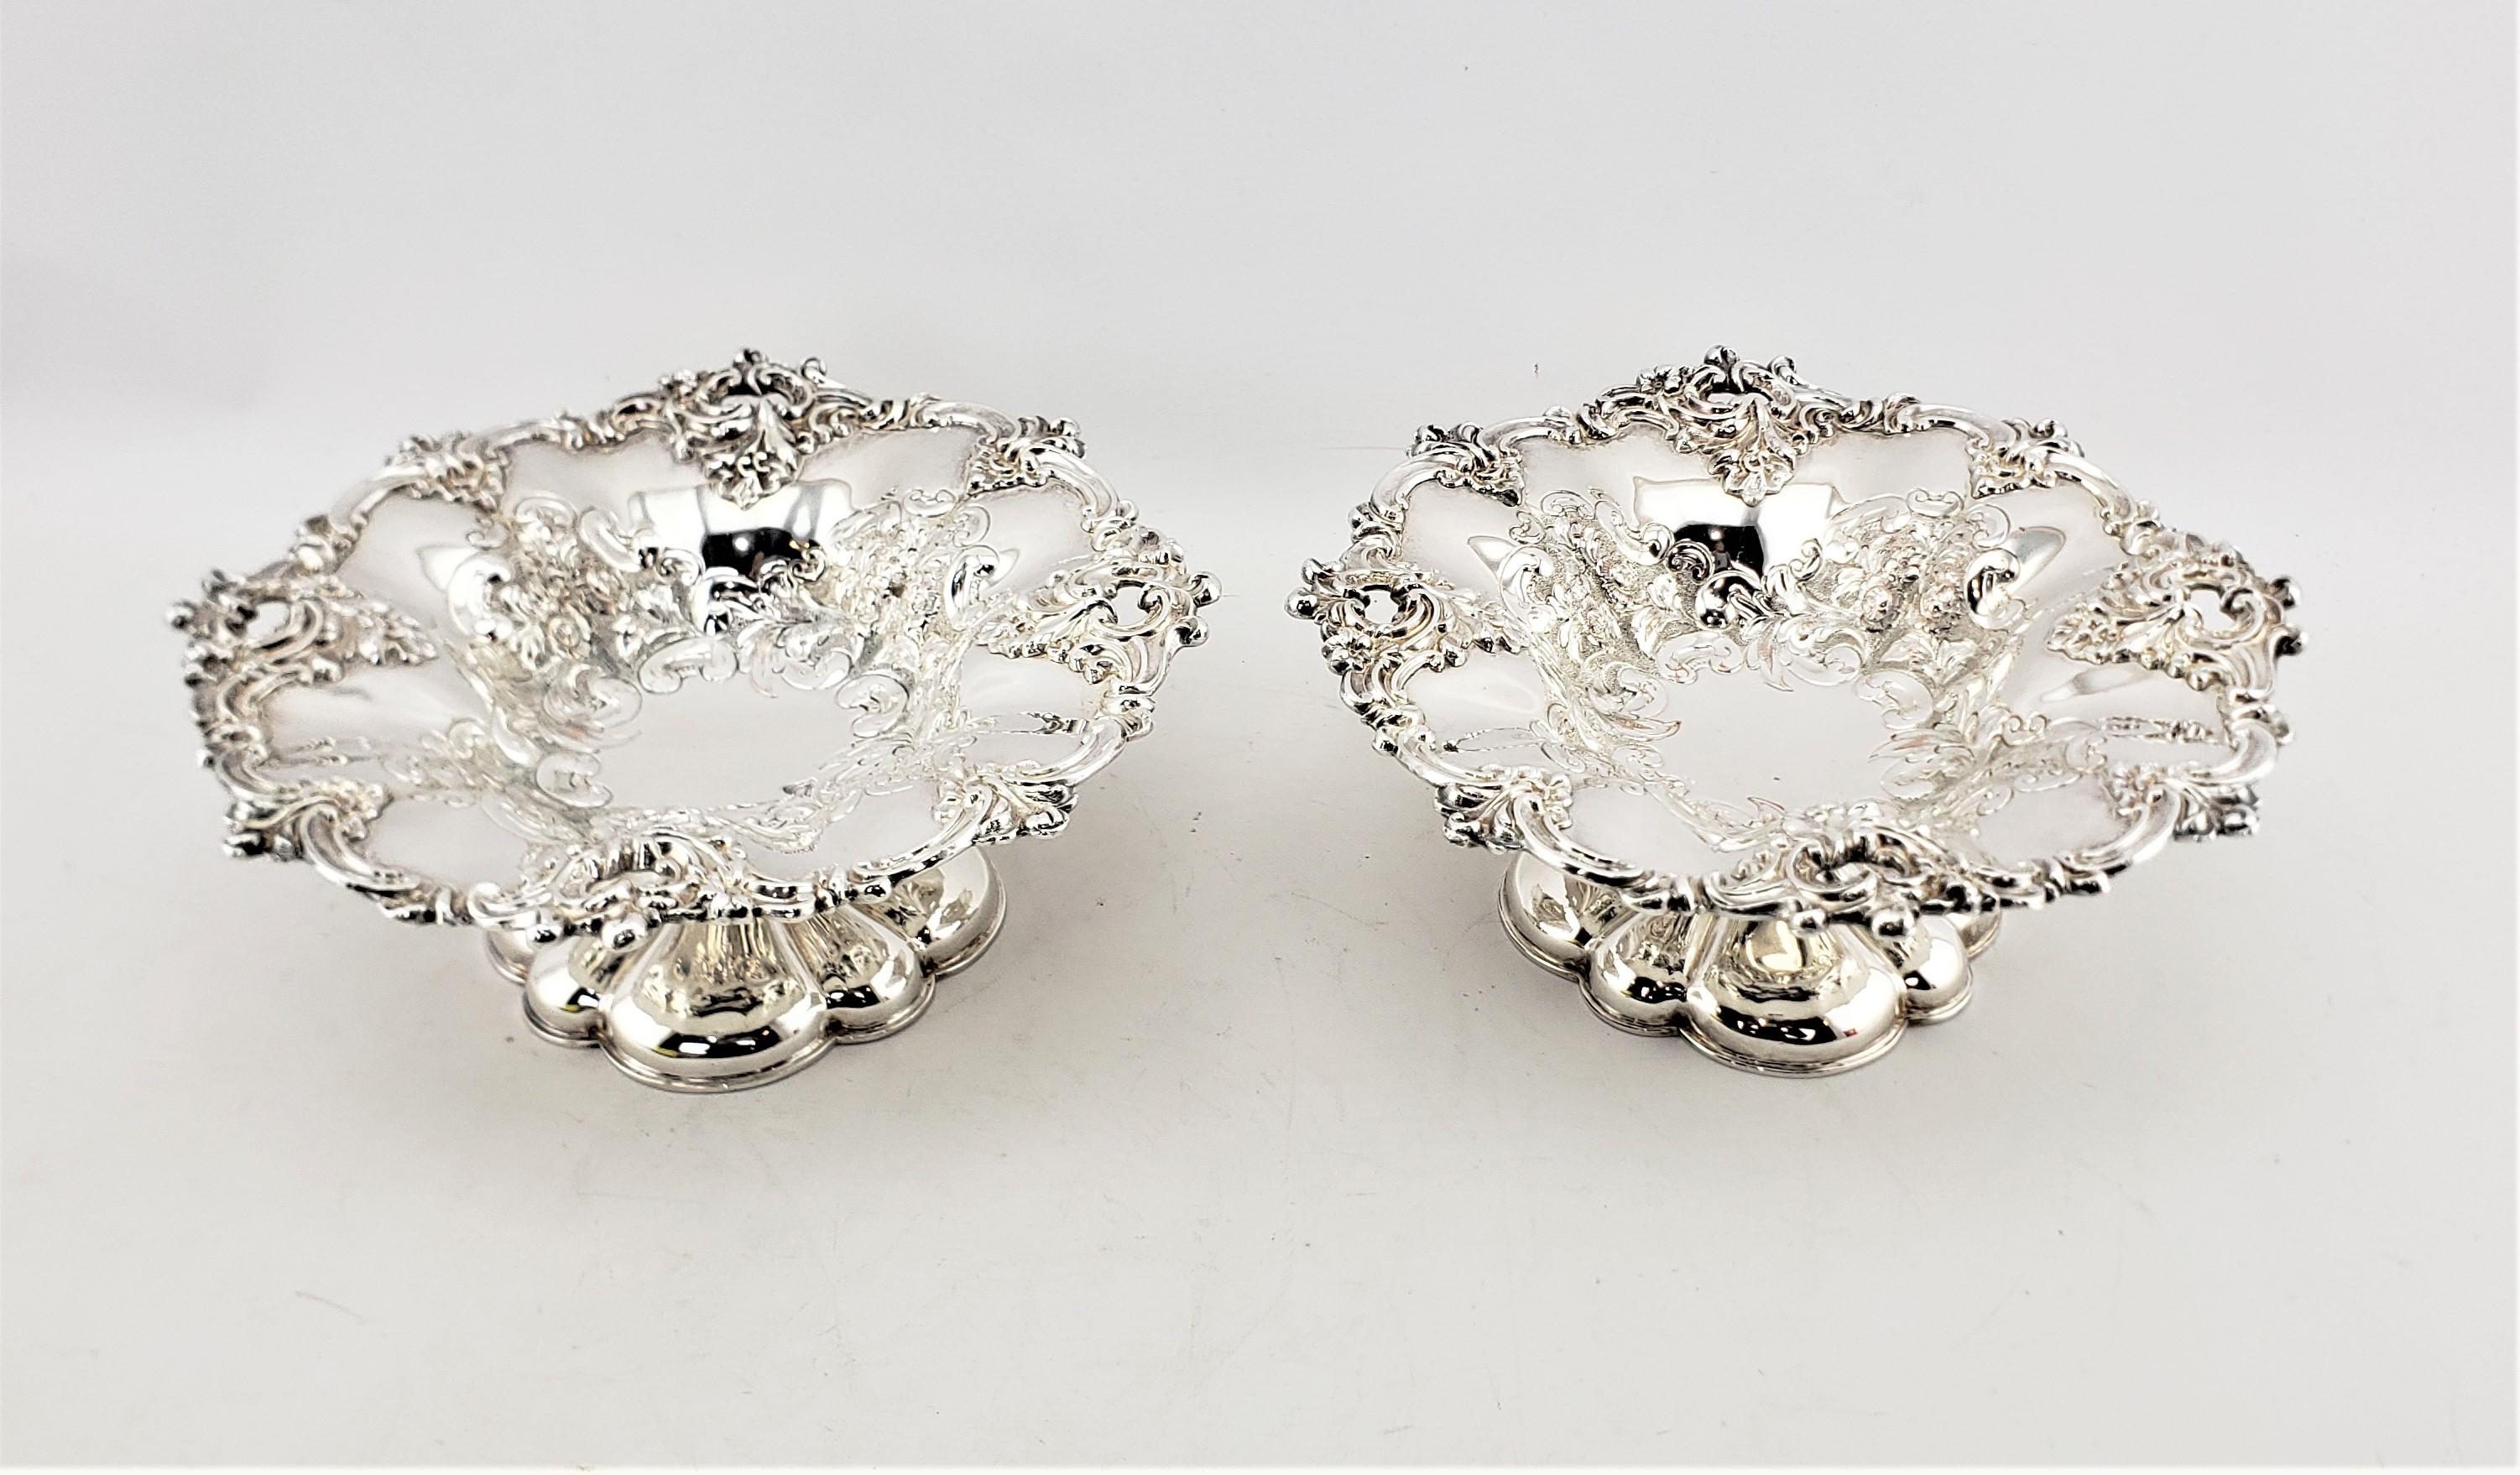 Cette paire de bols à pied ou tazzas en métal argenté a été fabriquée par la célèbre société Barker-Ellis d'Angleterre vers 1920 dans un style victorien. Les bols sont en métal argenté sur cuivre, avec des bords festonnés et une décoration florale